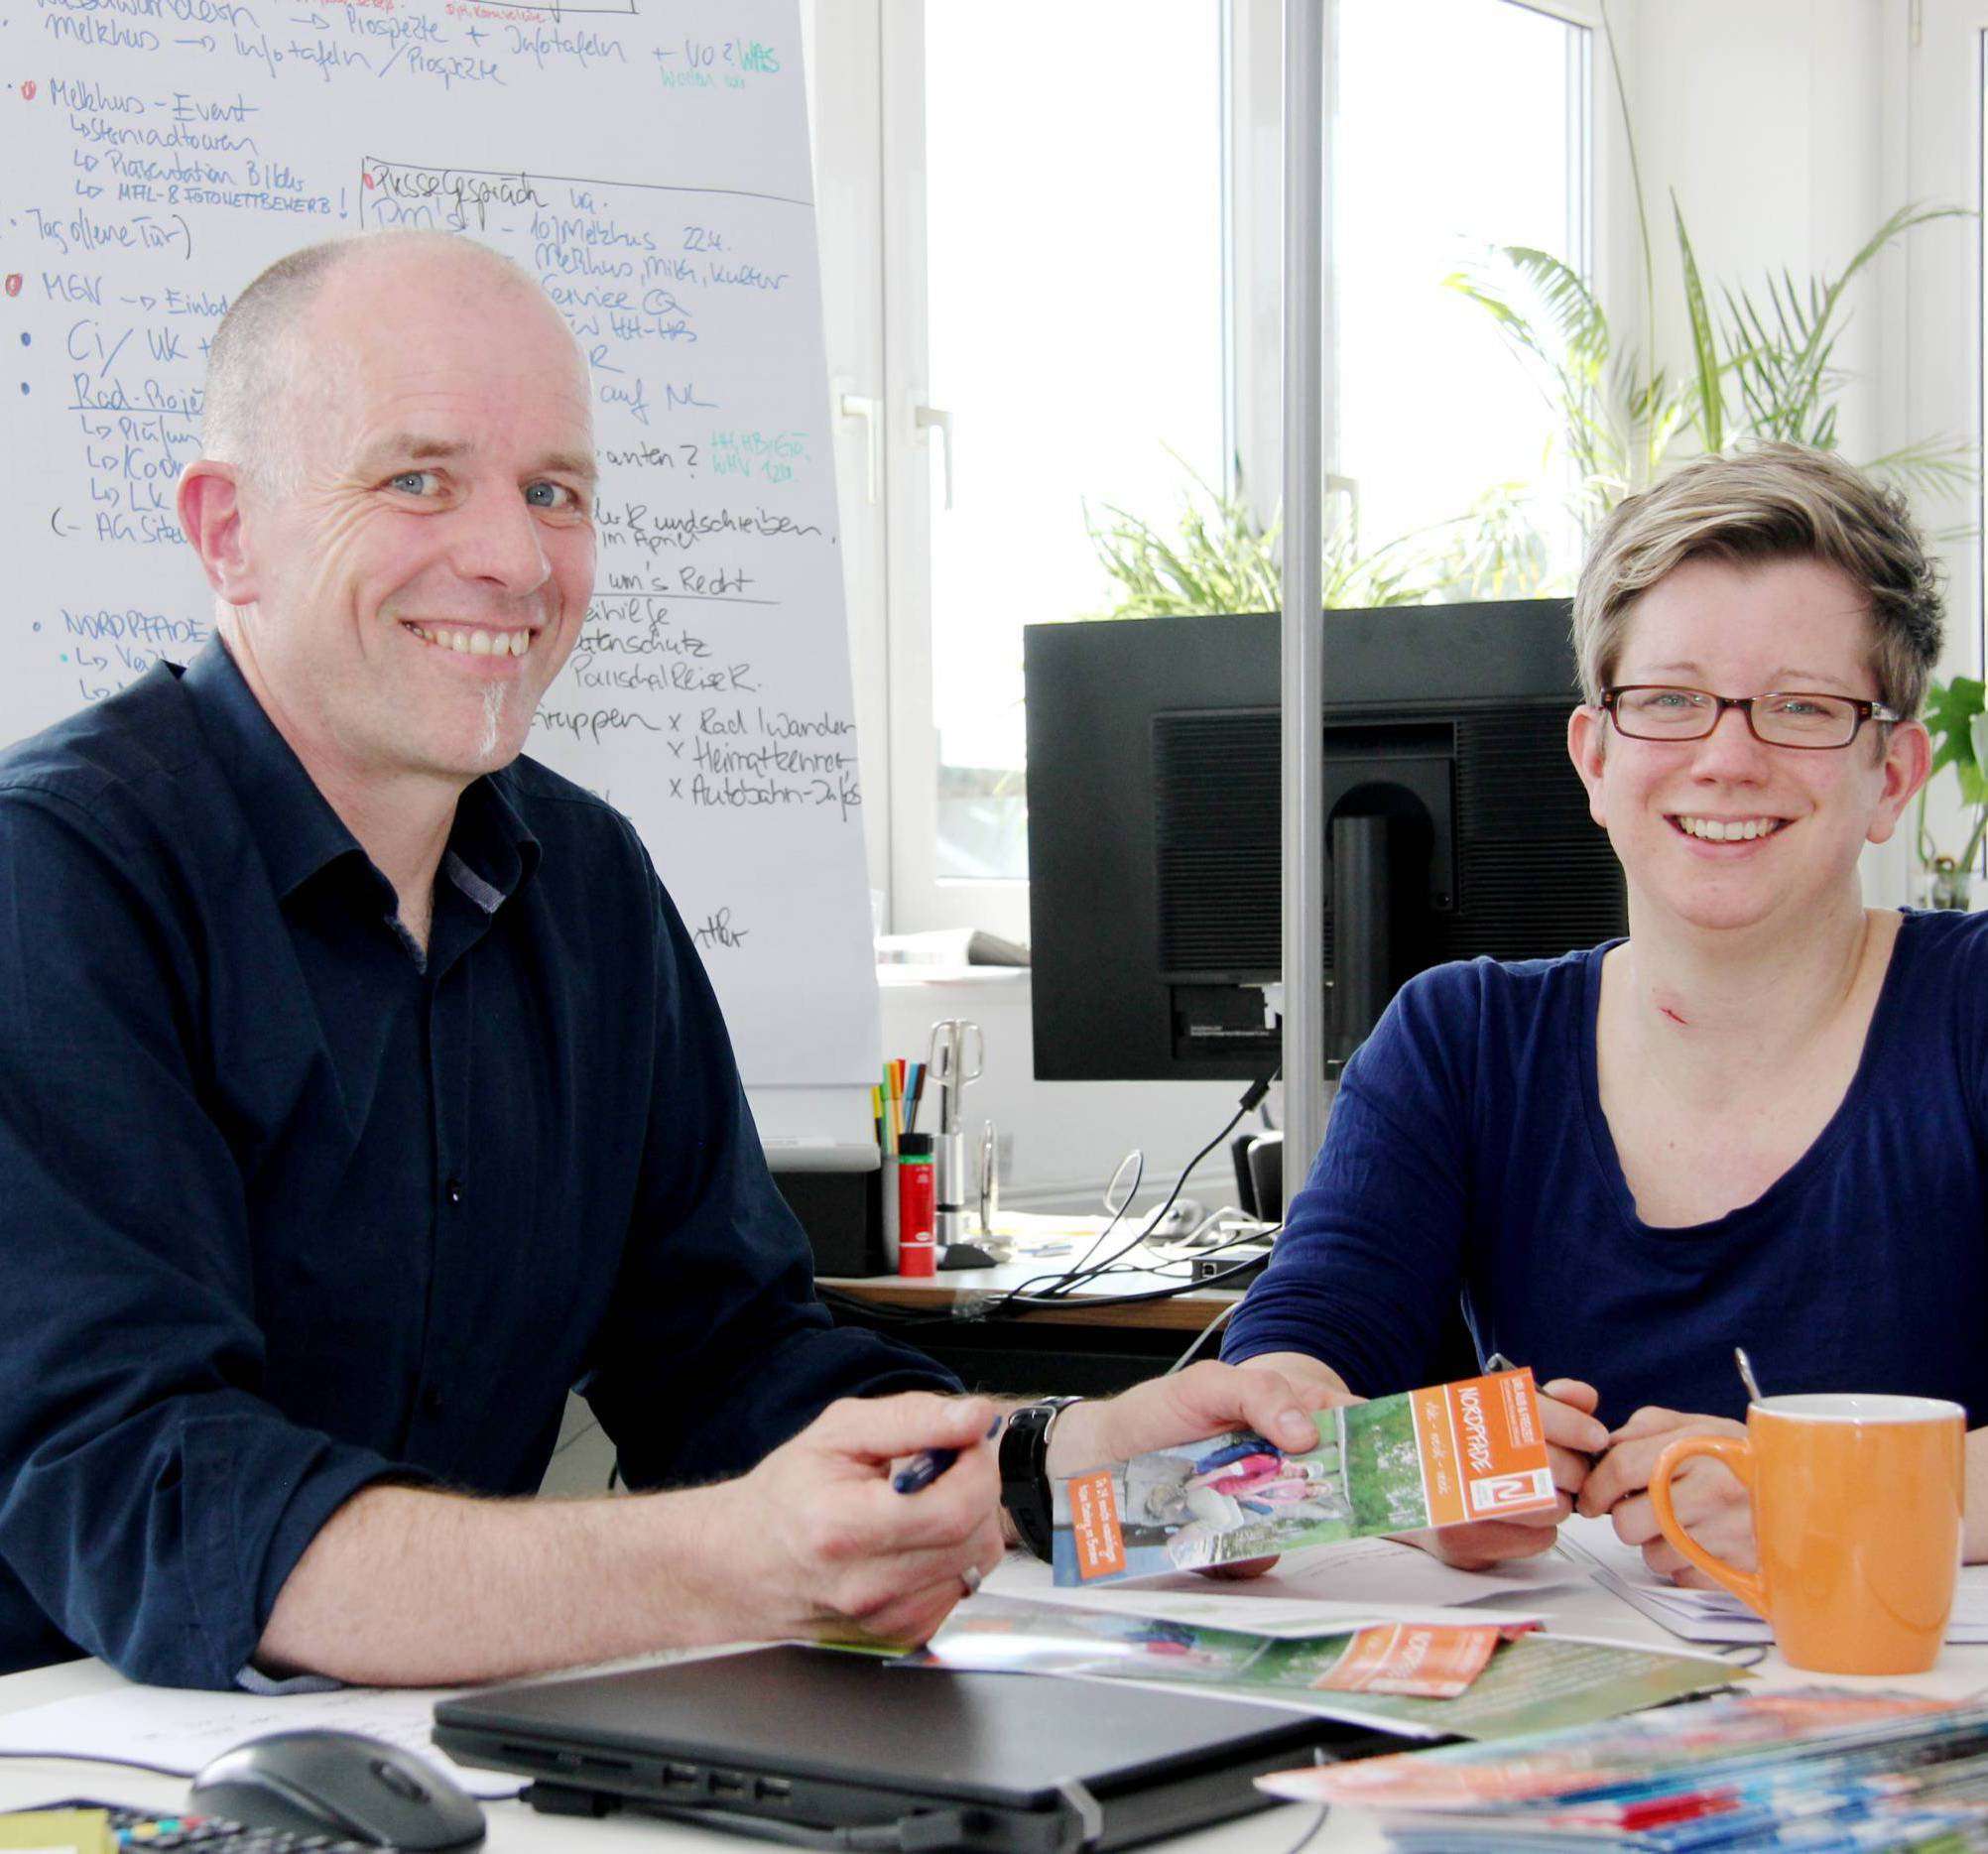 Udo Fischer und Petra Welz geben Einblick in die aktuellen Projekte des Tourow u2013 und wie es ist, an einem neuen Standort zu arbeiten. Foto: Nina Baucke